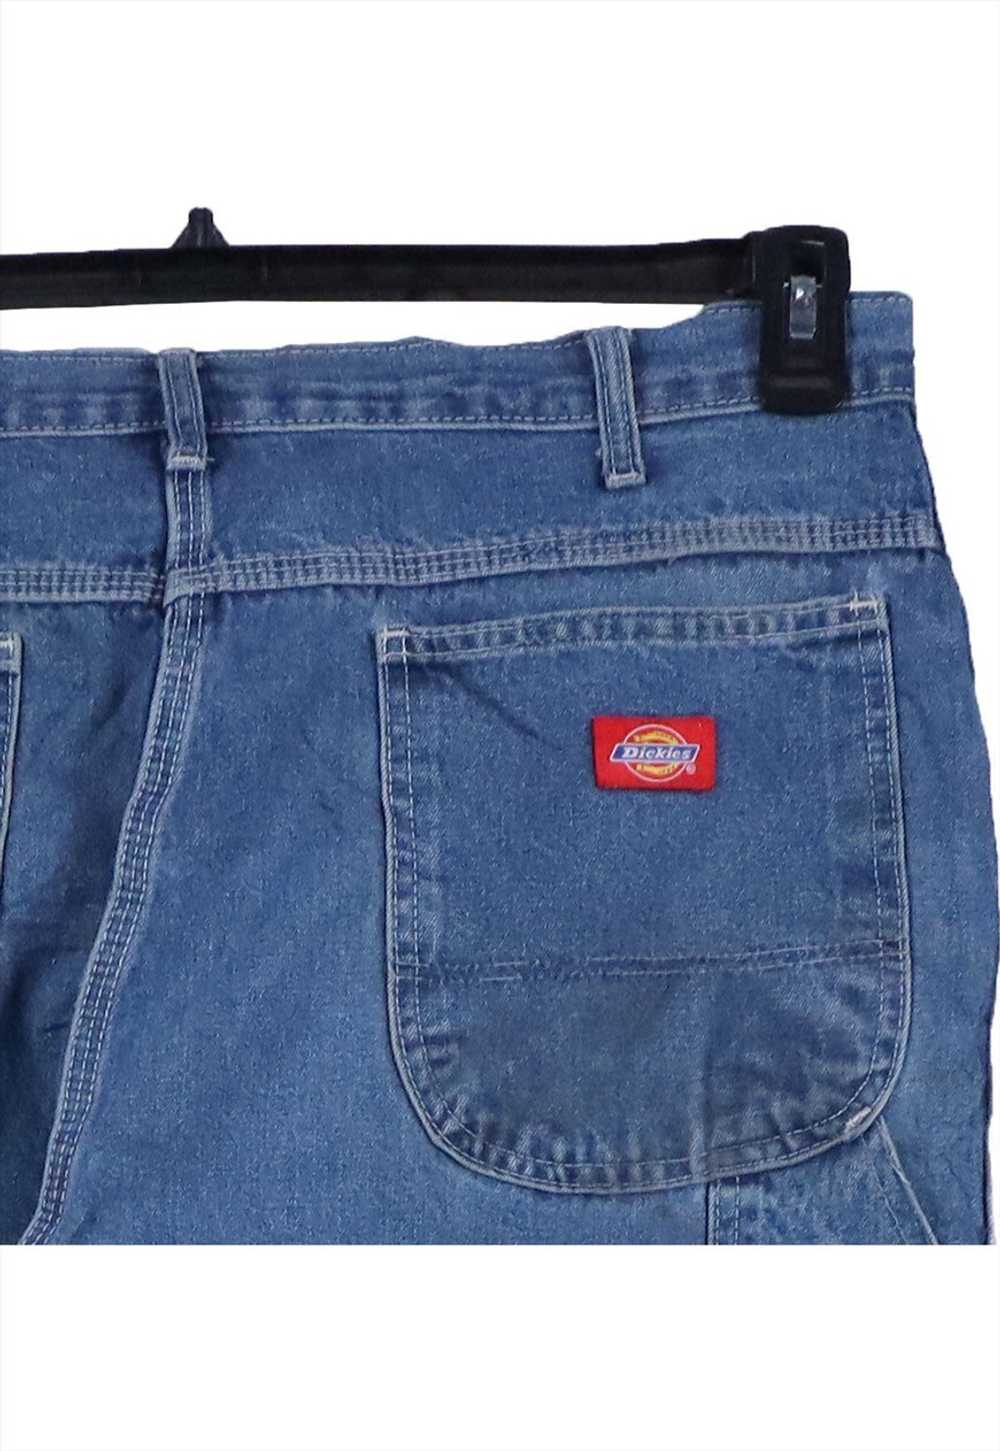 Vintage 90's Dickies Jeans / Pants Carpenter Work… - image 4